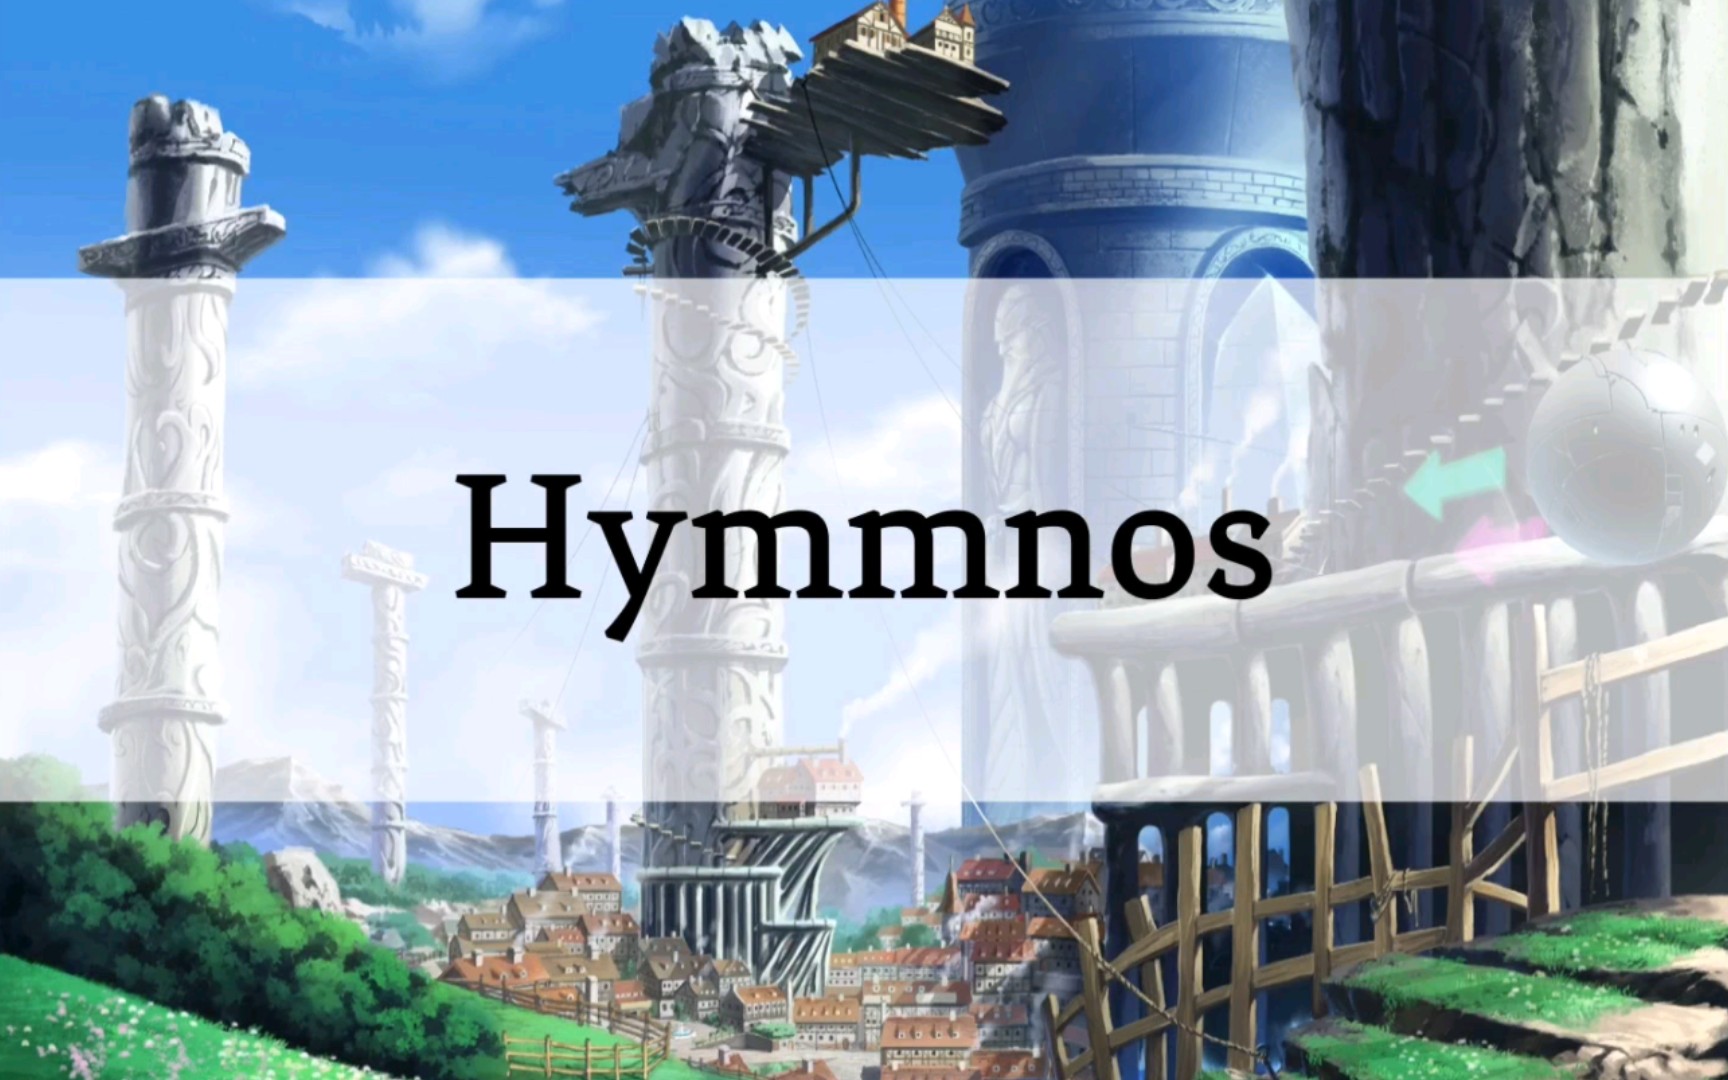 【魔塔大陆】【人造语言】塔语Hymmnos听起来是什么样的